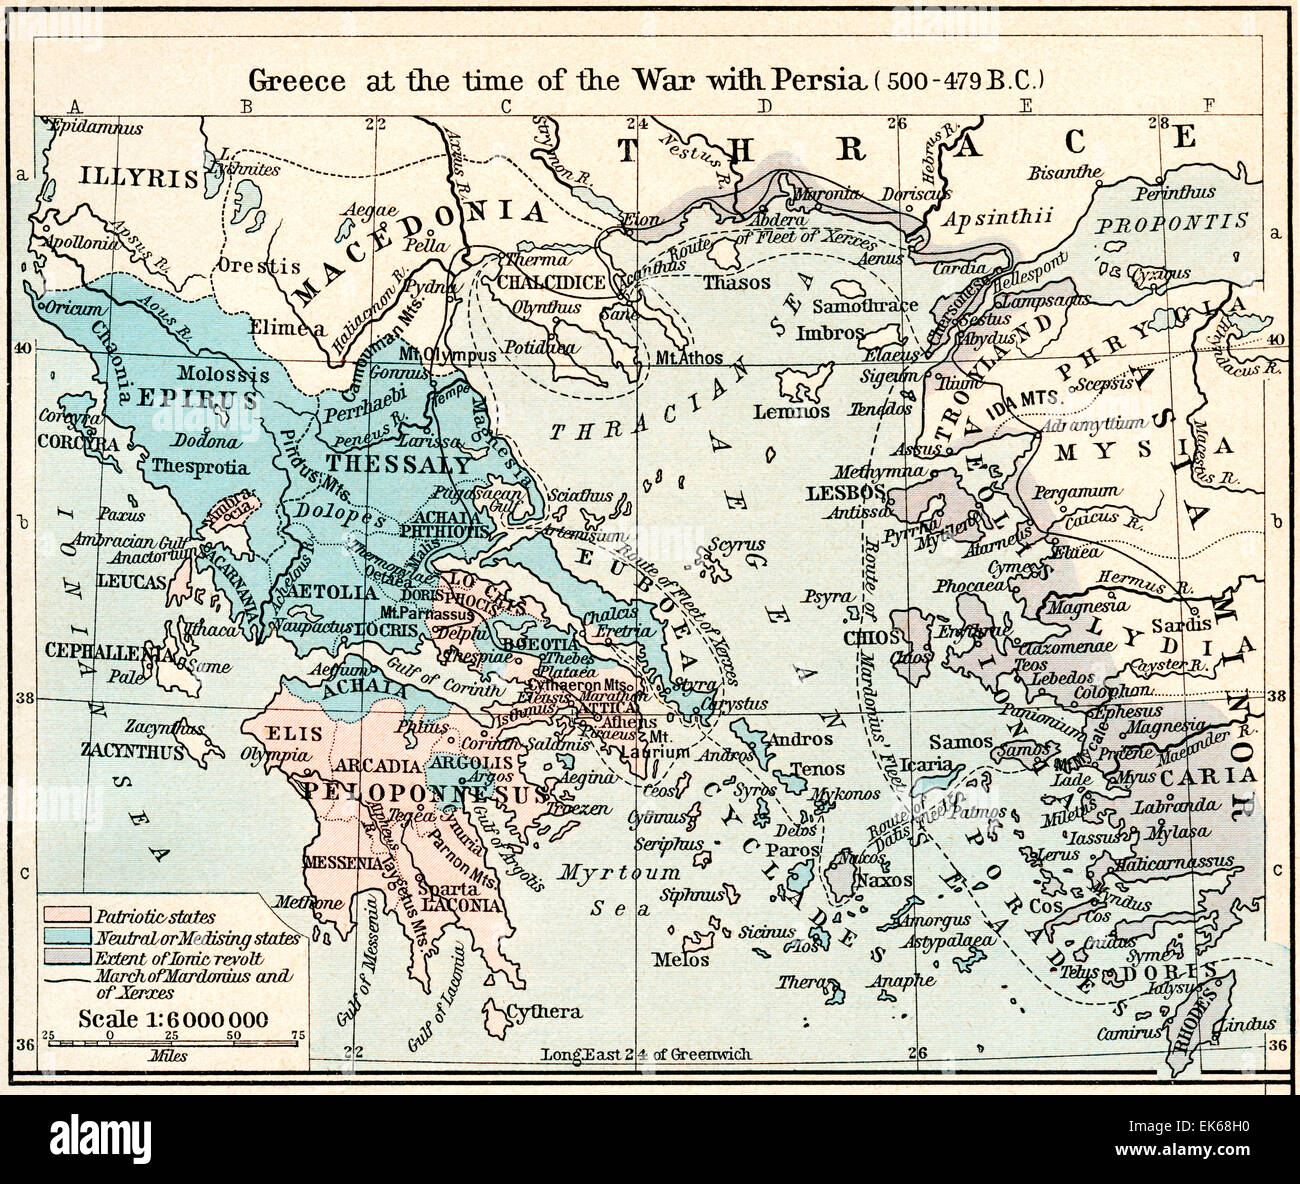 Karte von Griechenland zur Zeit des Krieges mit Persien, 500-479 v. Chr.  Das Athenian Reich auf dem Höhepunkt. Stockfoto